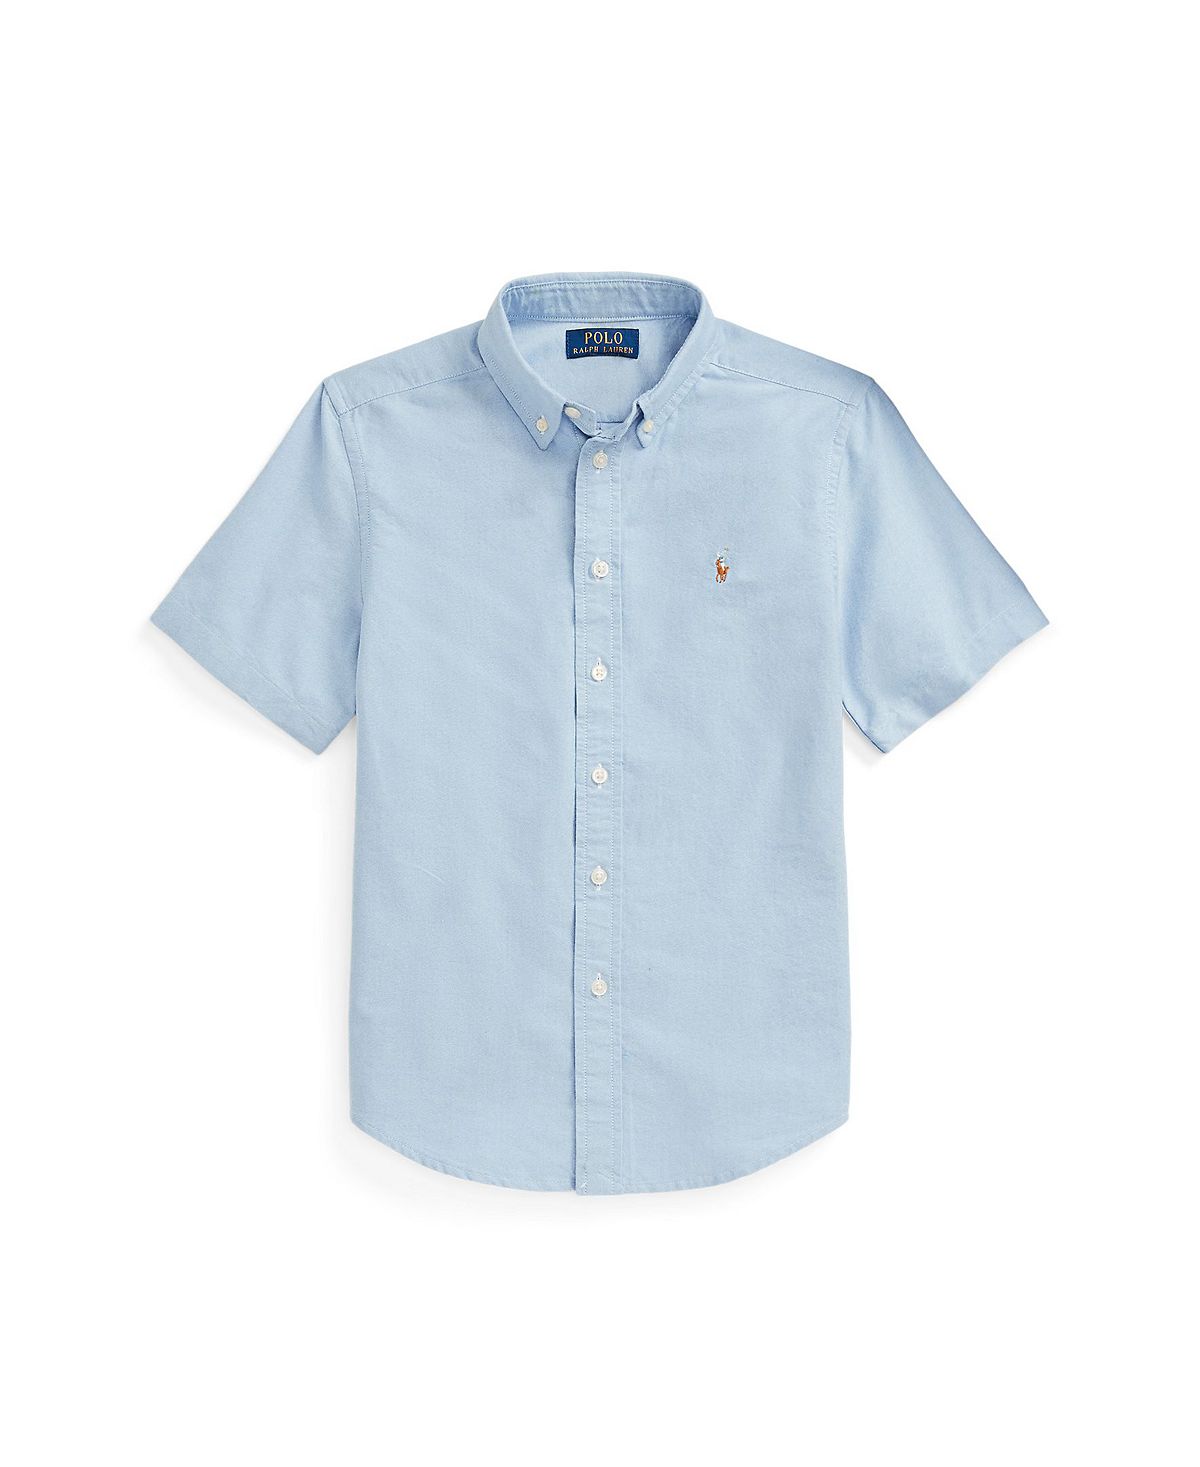 Хлопковая оксфордская рубашка с короткими рукавами для больших мальчиков Polo Ralph Lauren цена и фото